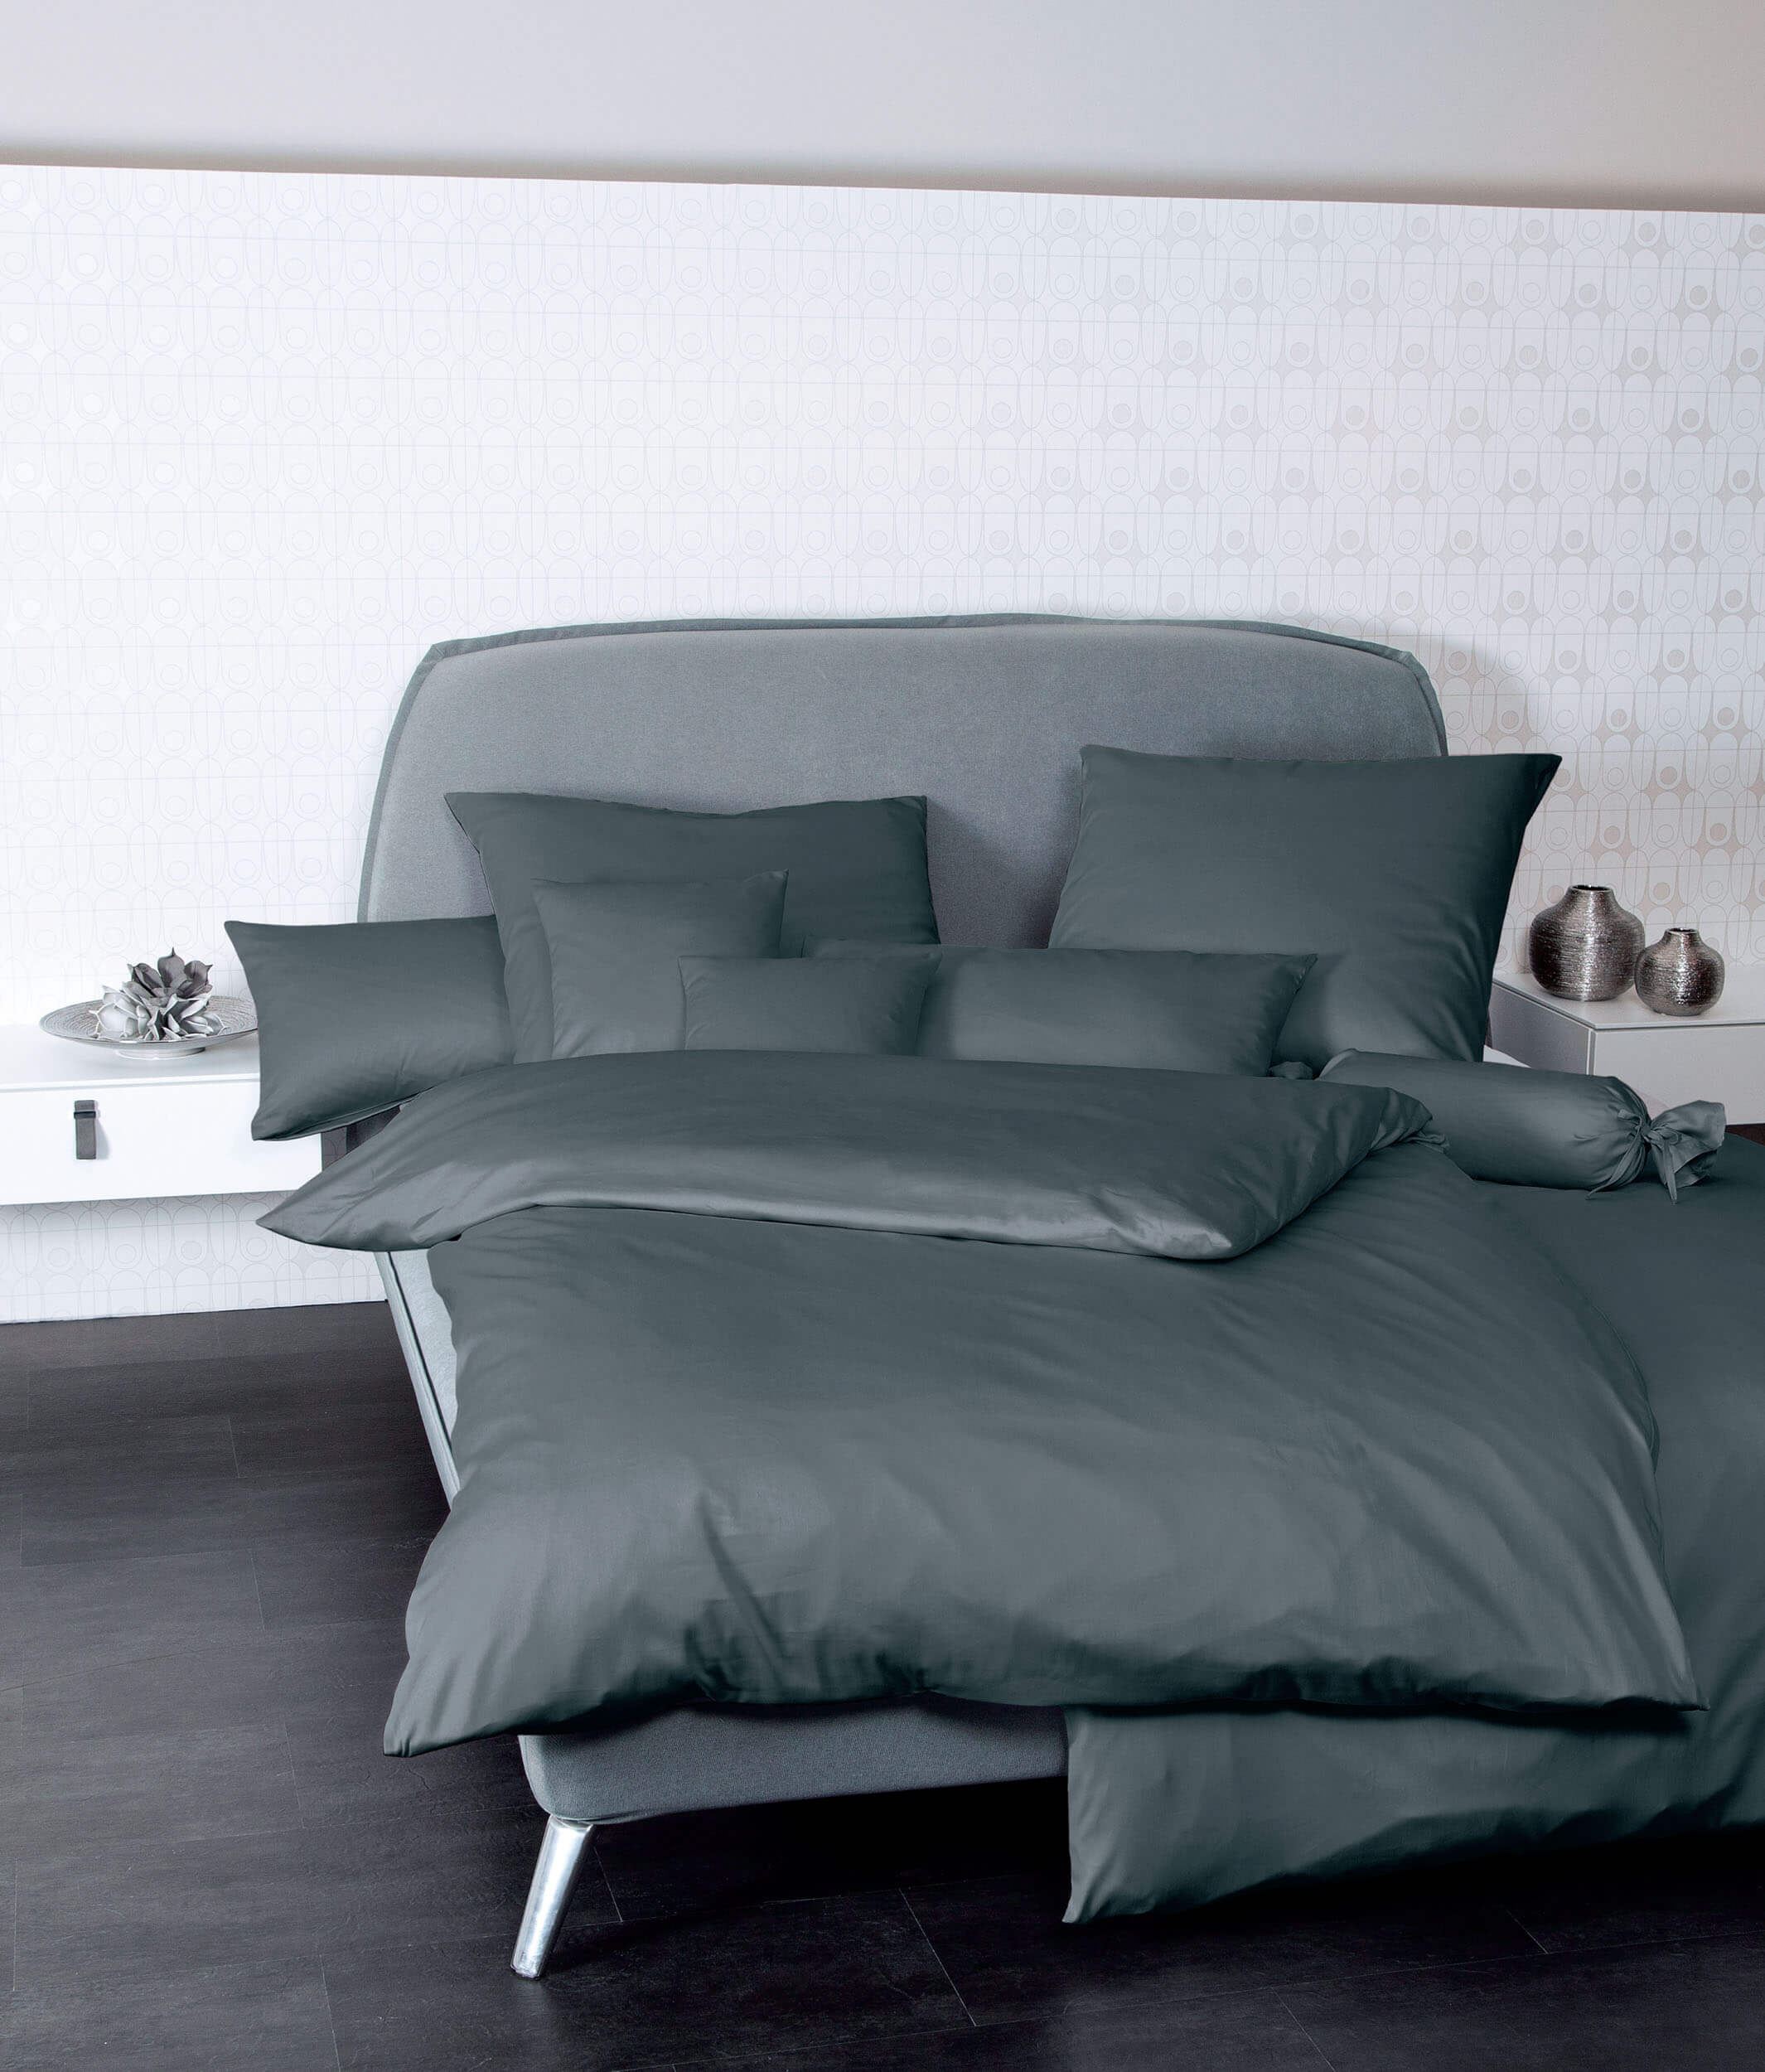 Серое постельное белье Colors Anthrazit ☞ Размер пододеяльника: 155 x 200 см ☞ Размер простыни: Без простыни ☞ Размер наволочек: 50 x 70 см (1 шт.)